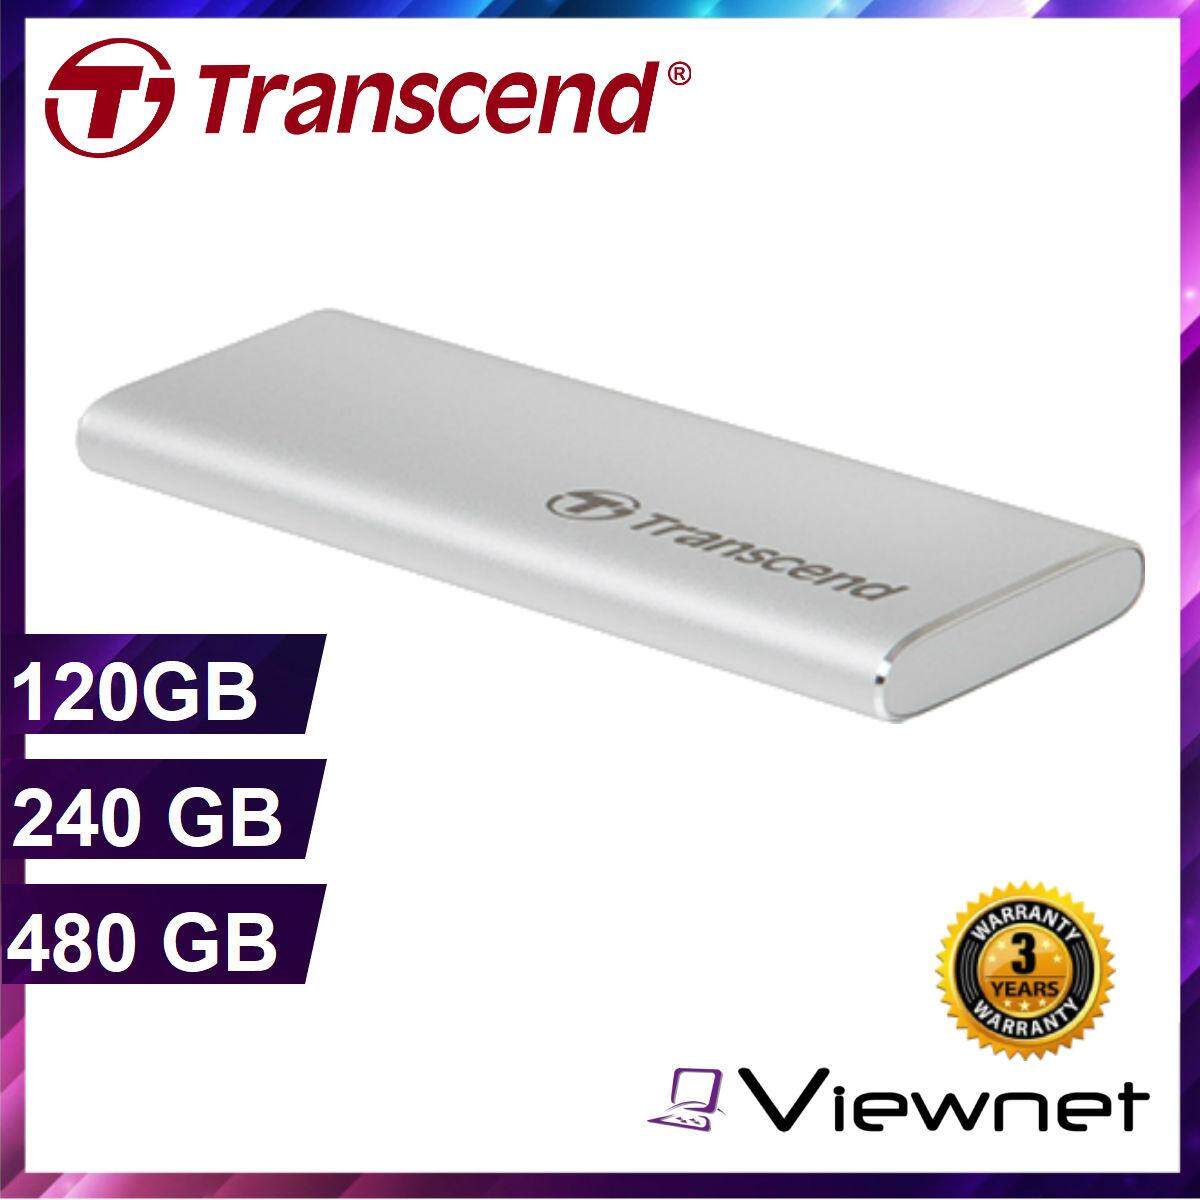 Type C Transcend 480GB TS480GESD240C External SSD USB 3.1 Gen 2